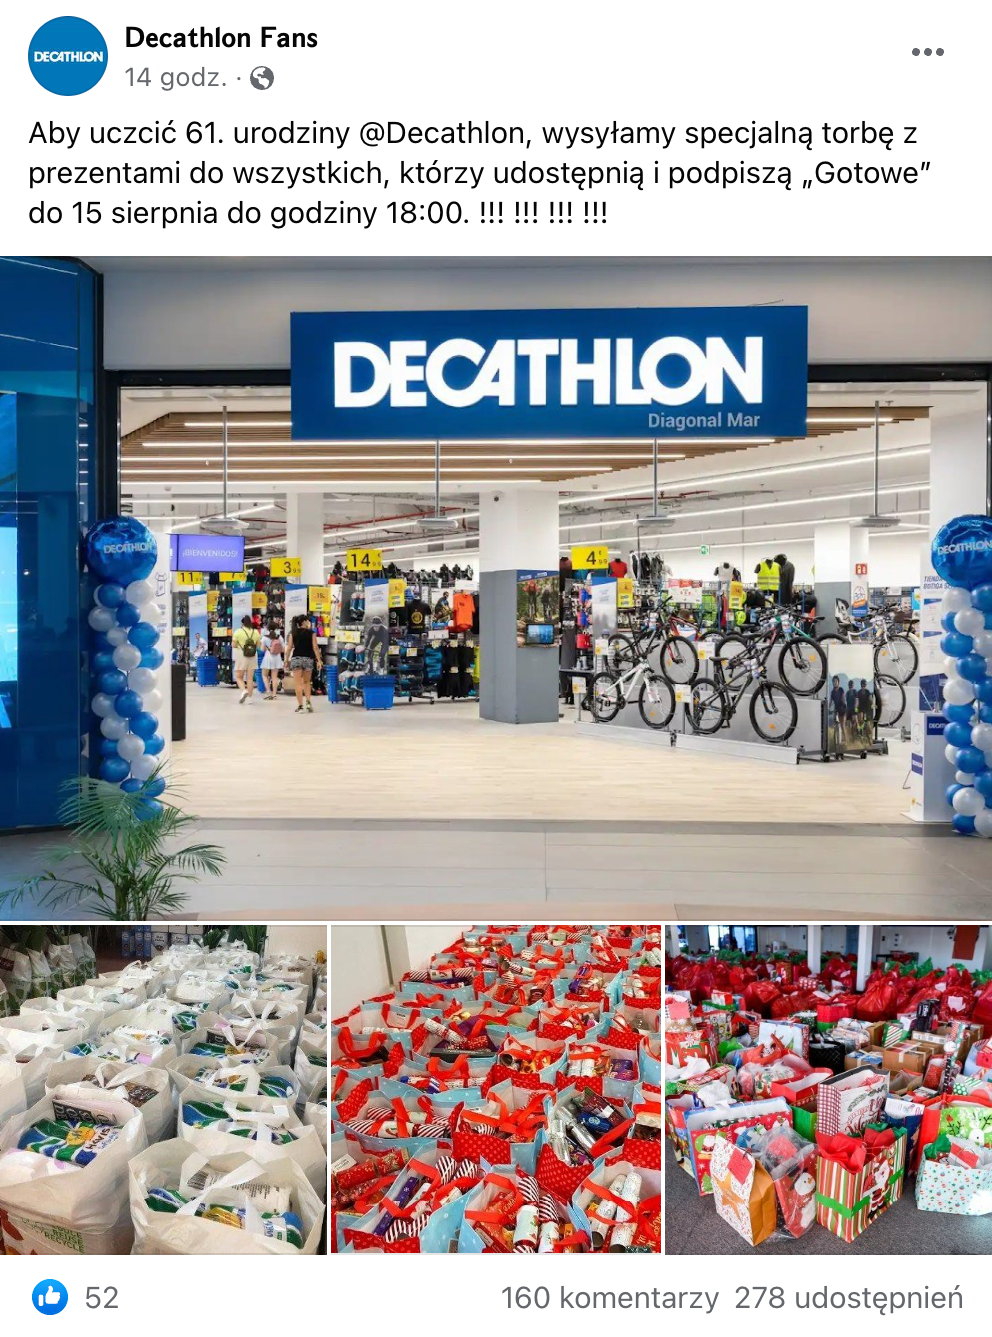 Zrzut ekranu z posta na Facebooku, w którym ogłoszono rzekomą akcję rozdawania toreb pełnych prezentów przez Decathlon. Wpis zdobył ponad 50 polubień, 160 komentarzy i ponad 270 udostępnień.